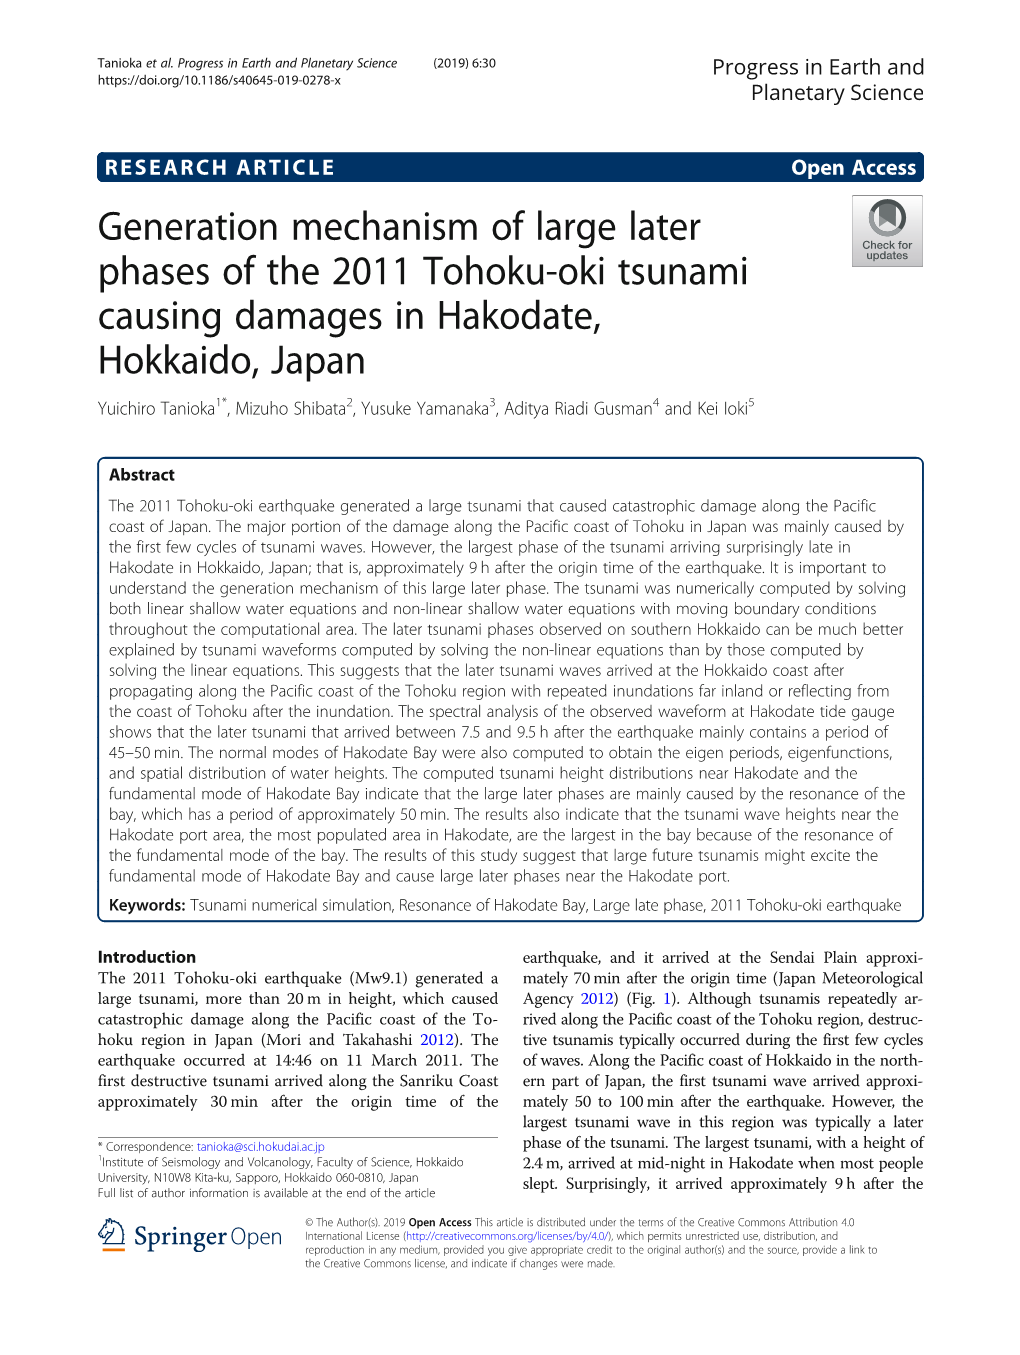 Generation Mechanism of Large Later Phases of the 2011 Tohoku-Oki